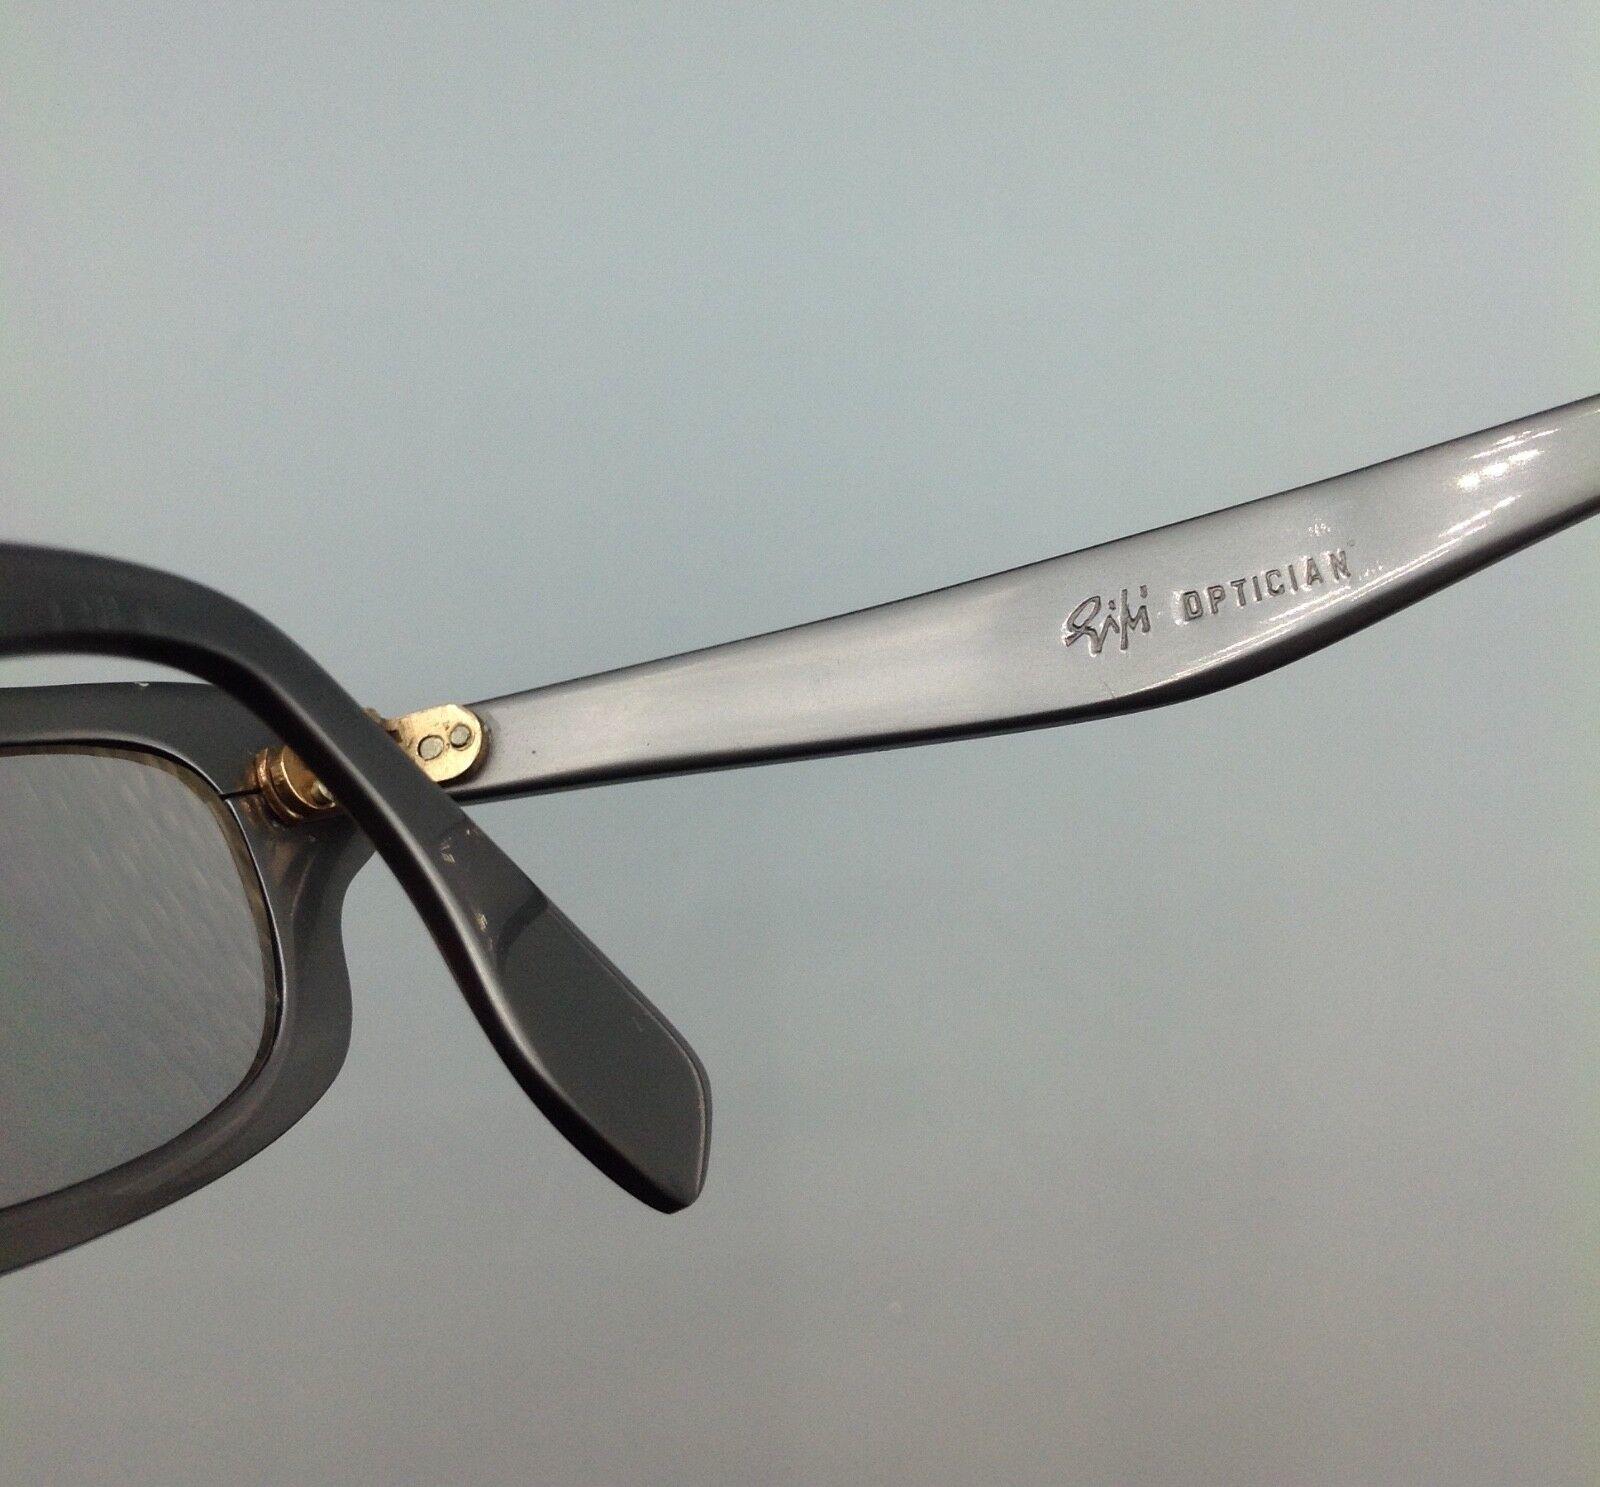 Optician Piuma Special occhiale sole vintage sunglasses sonnenbrillen lunettes